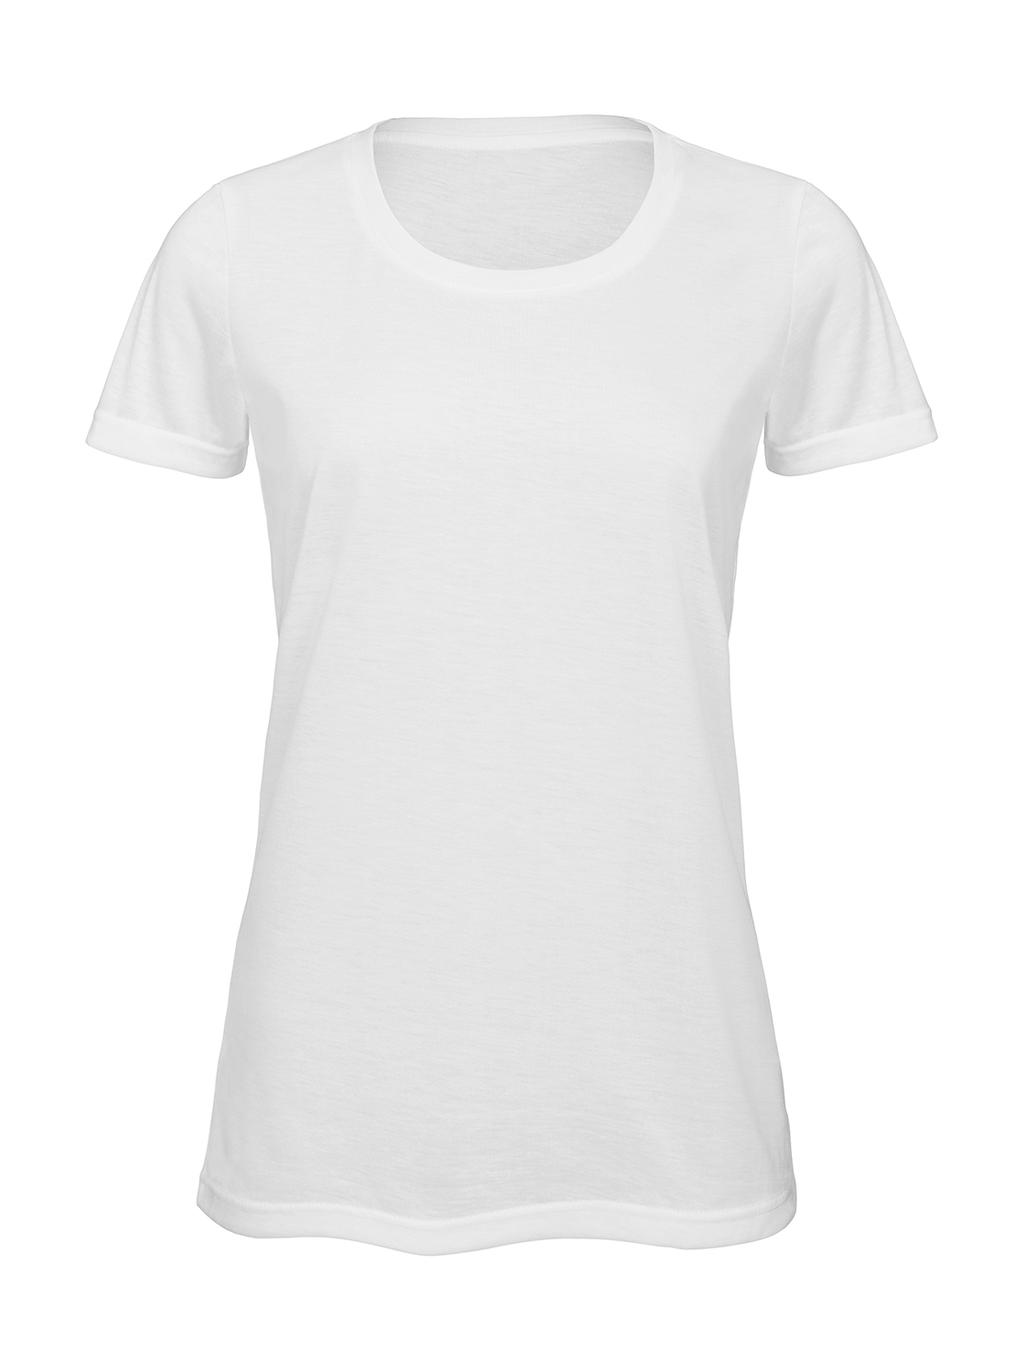 B & c - camiseta sublimación mujer - tw063